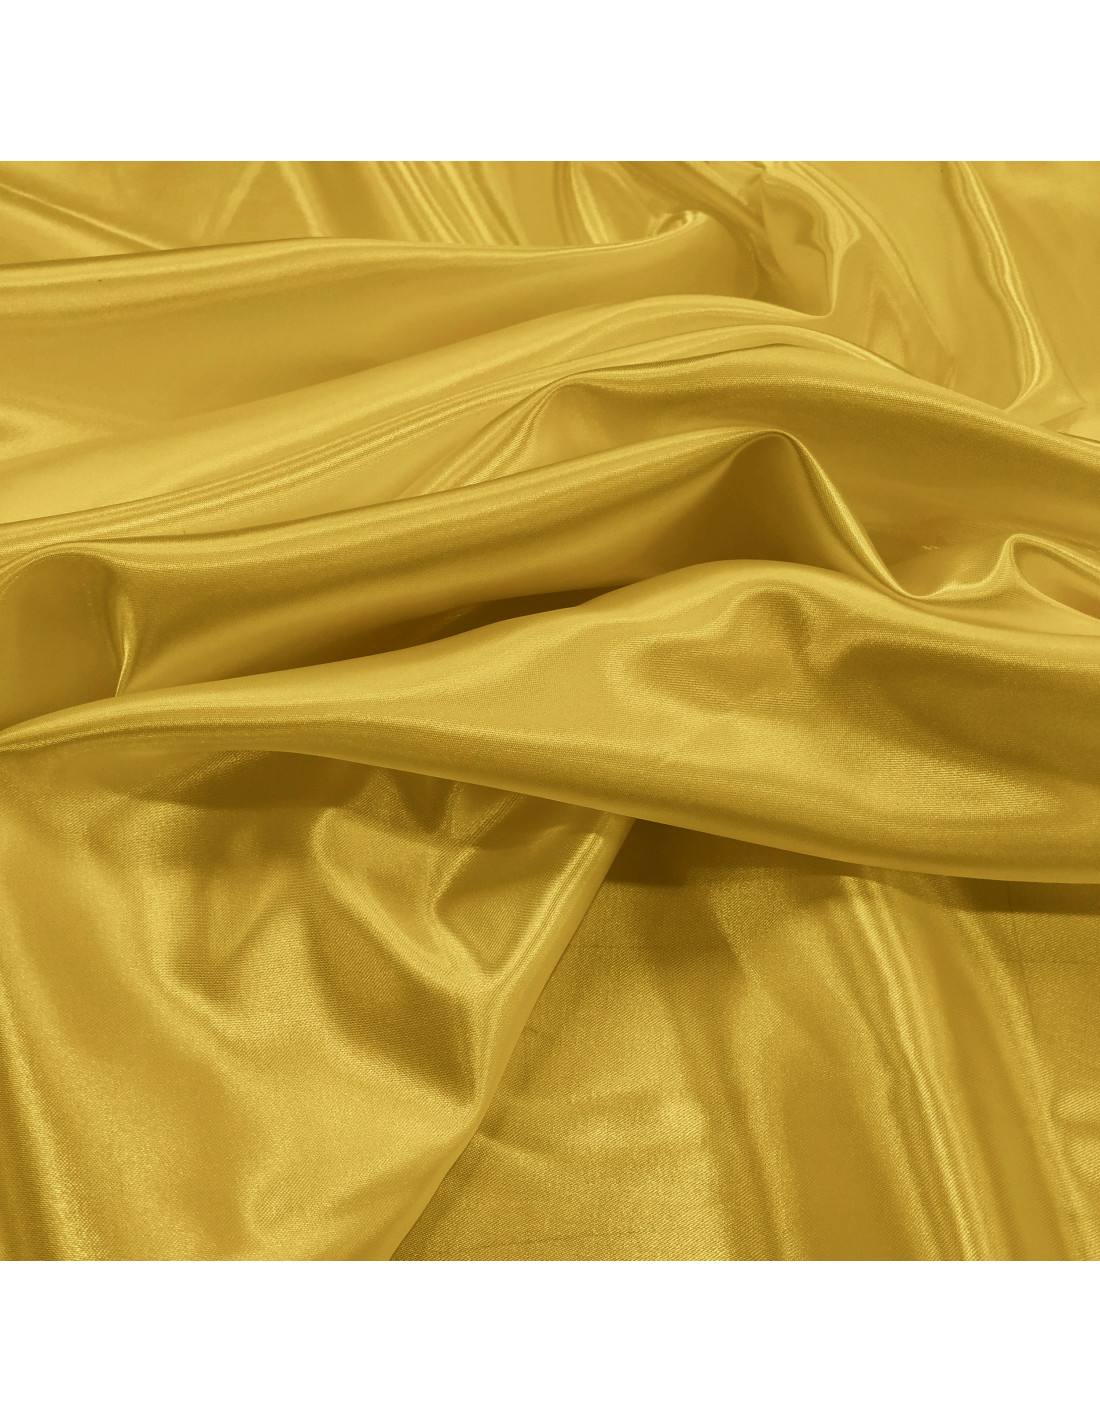 tela raso amarillo oro, tejido raso dorado, tela dorada para disfraz